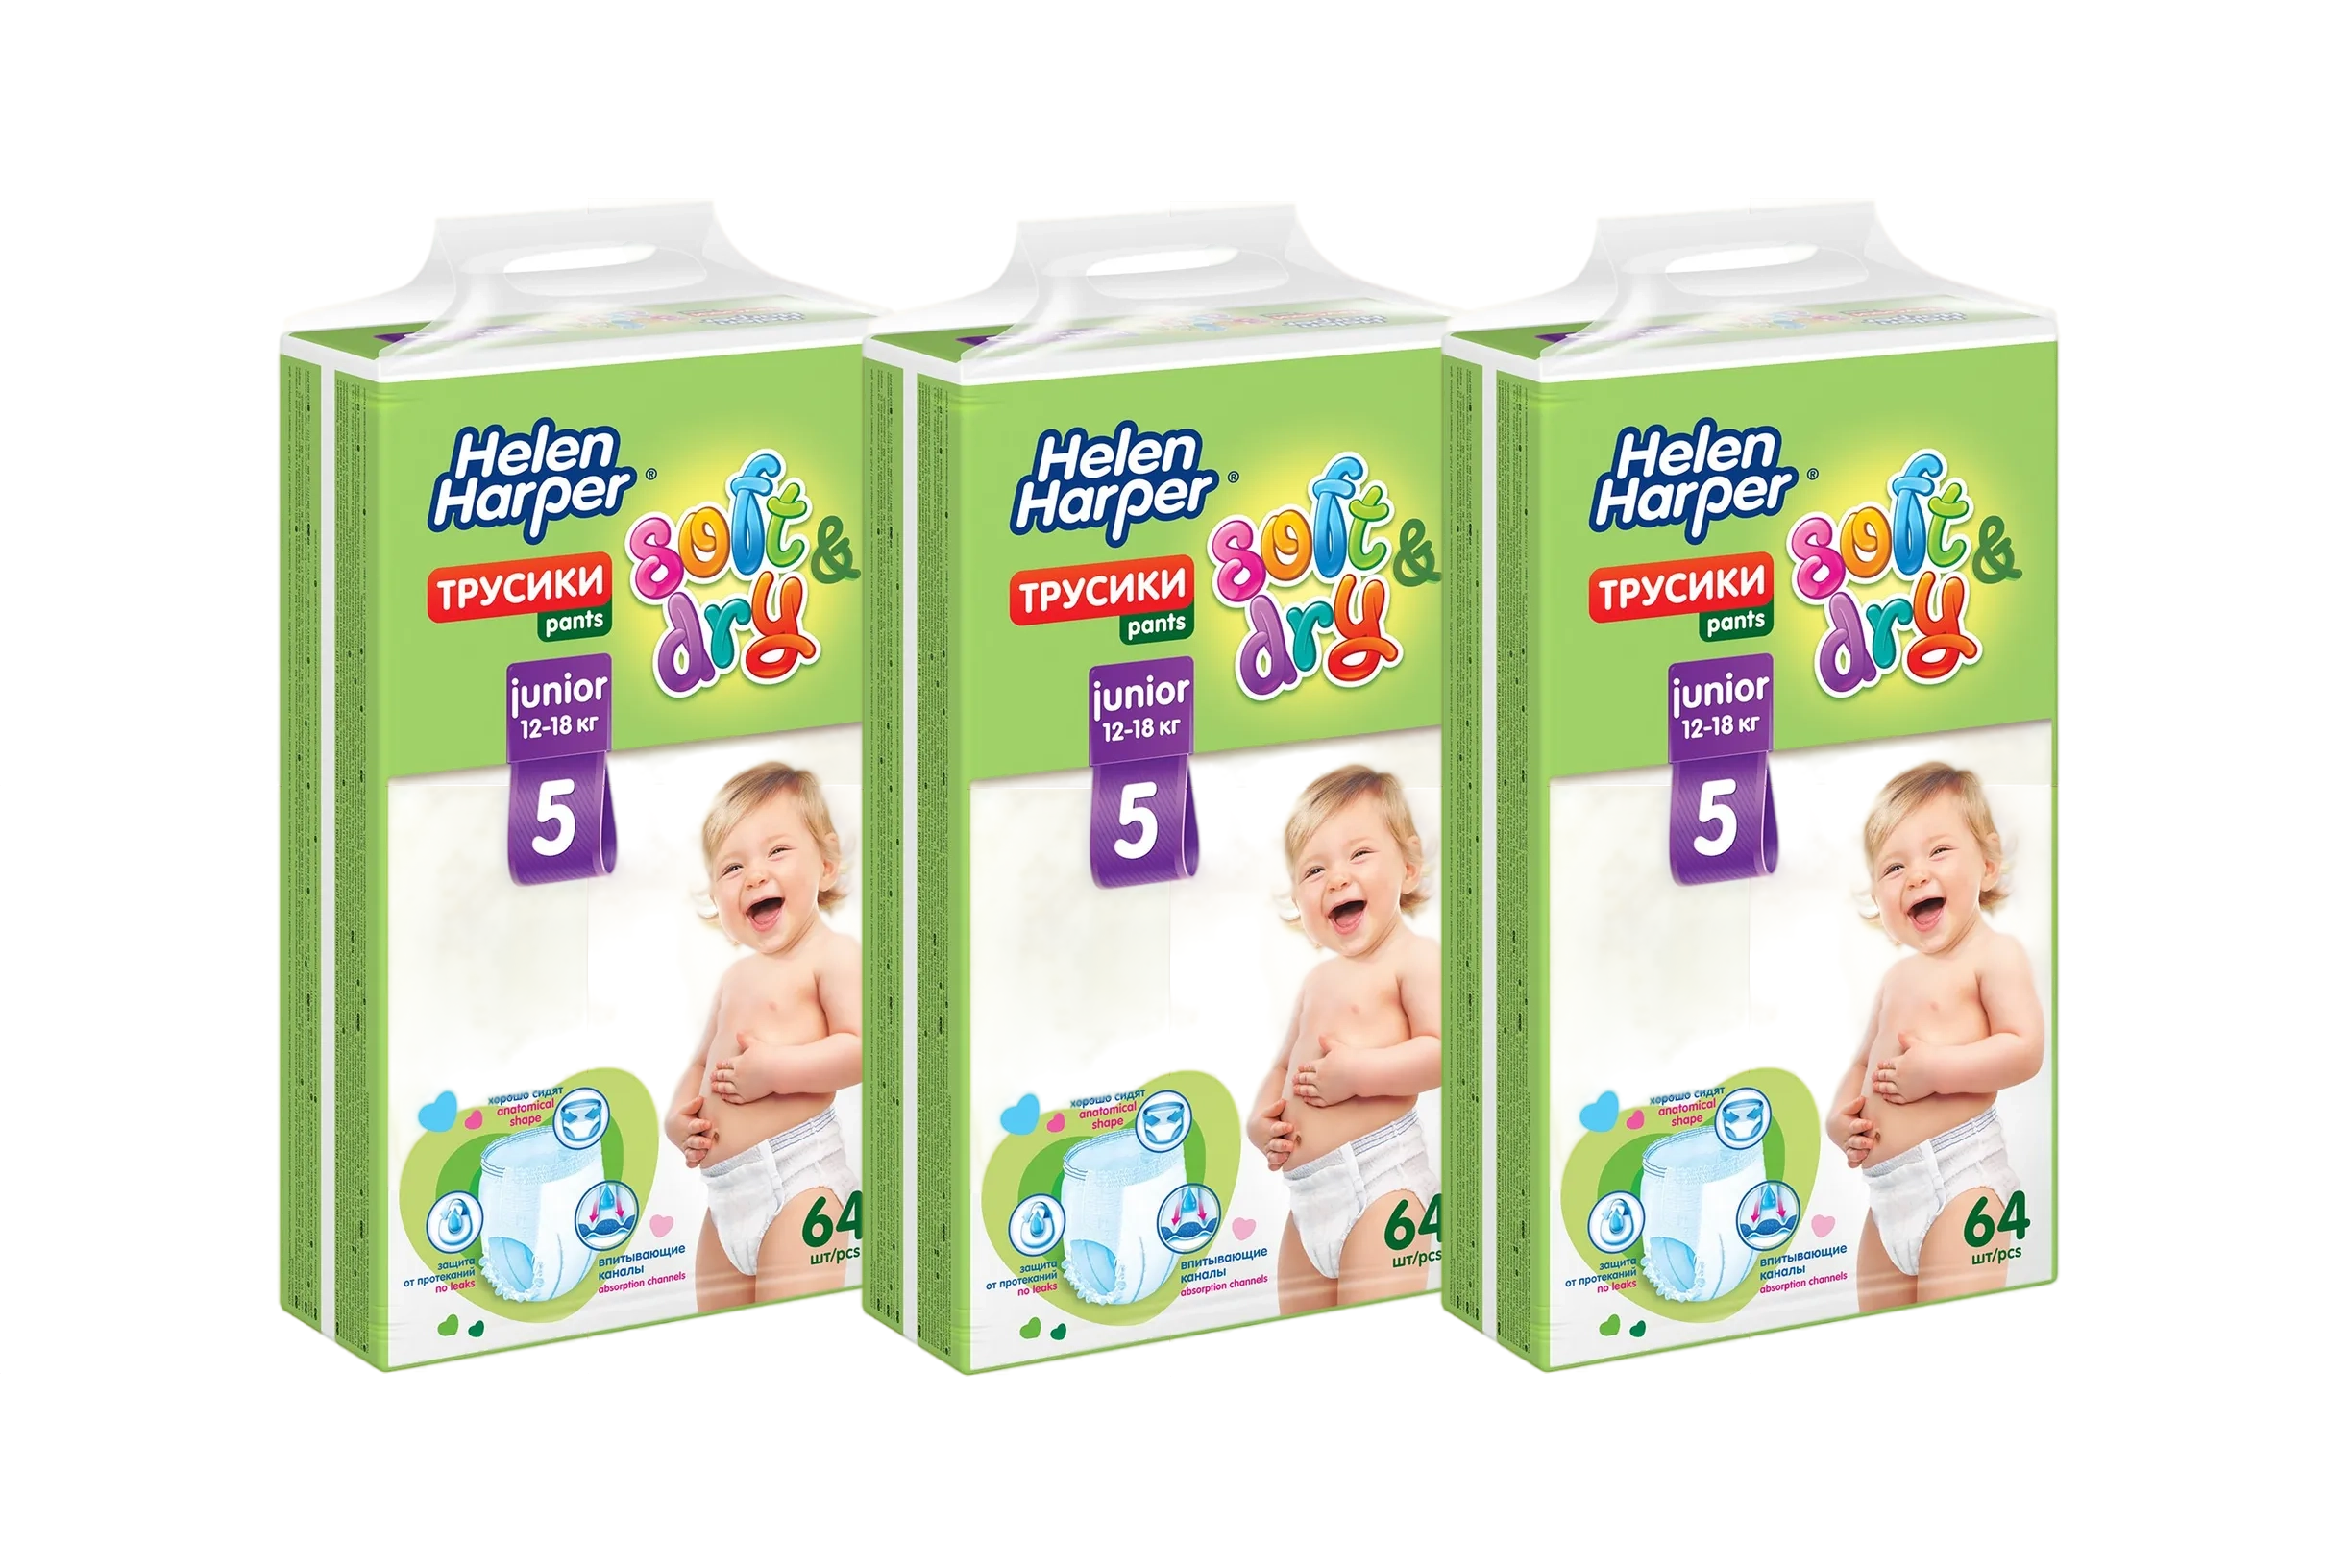 Детские трусики-подгузники HELEN HARPER Soft&Dry размер 5(Junior) 12-18 кг, 64шт, 3 уп.